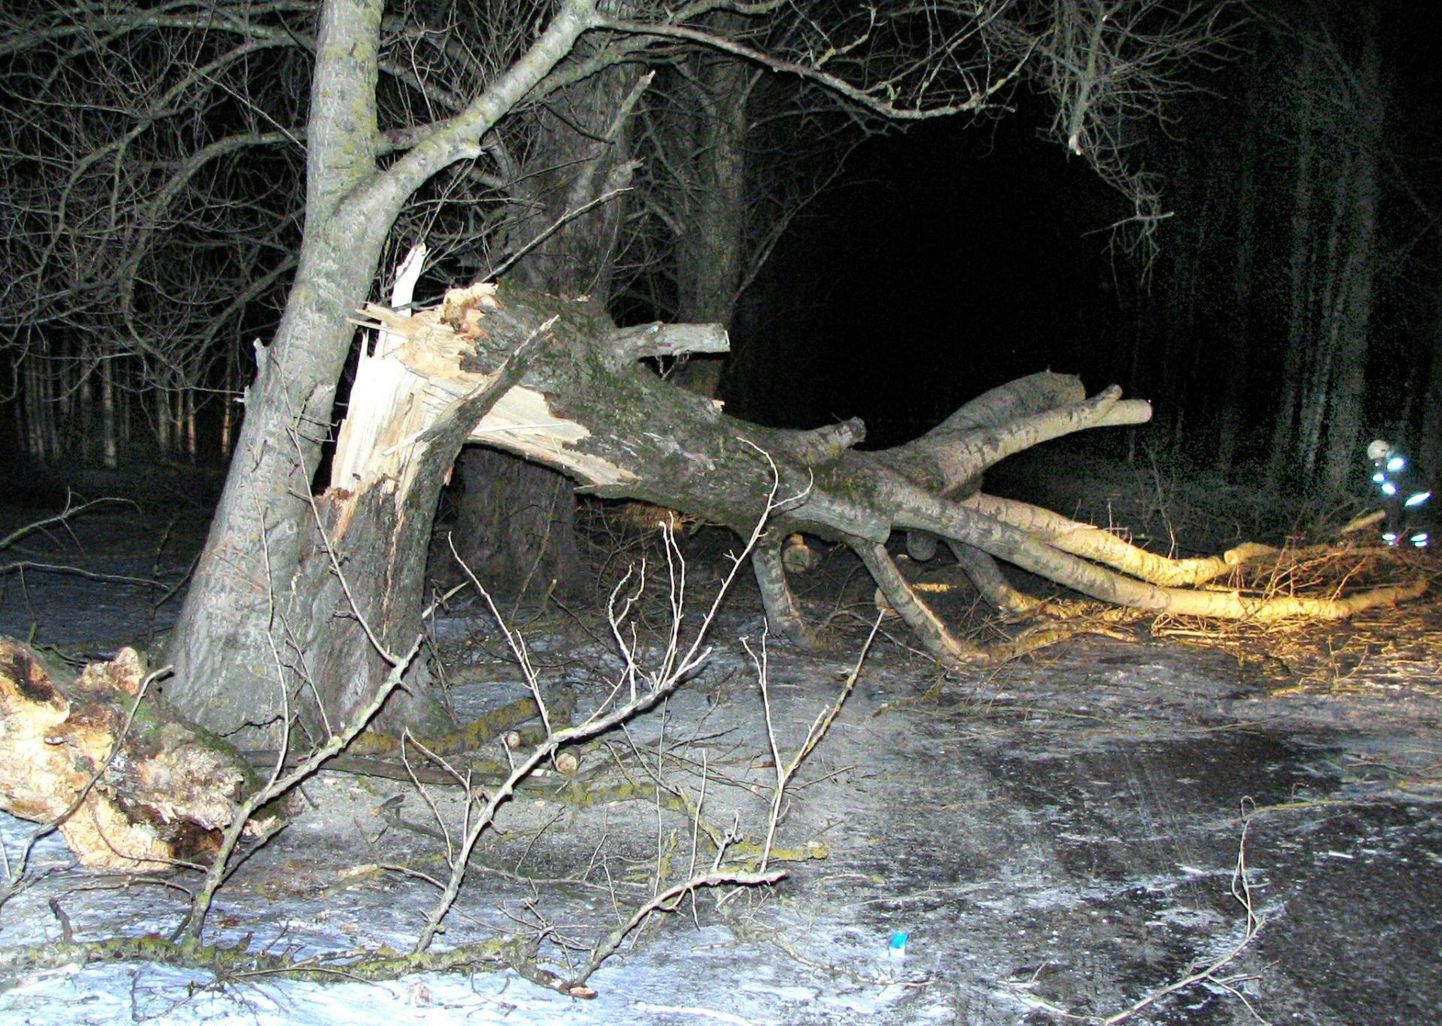 Teele kukkunud puu purustas eile õhtul Audru osavallas Liiva külas sellele otsa sõitnud kaubiku esiklaasi.